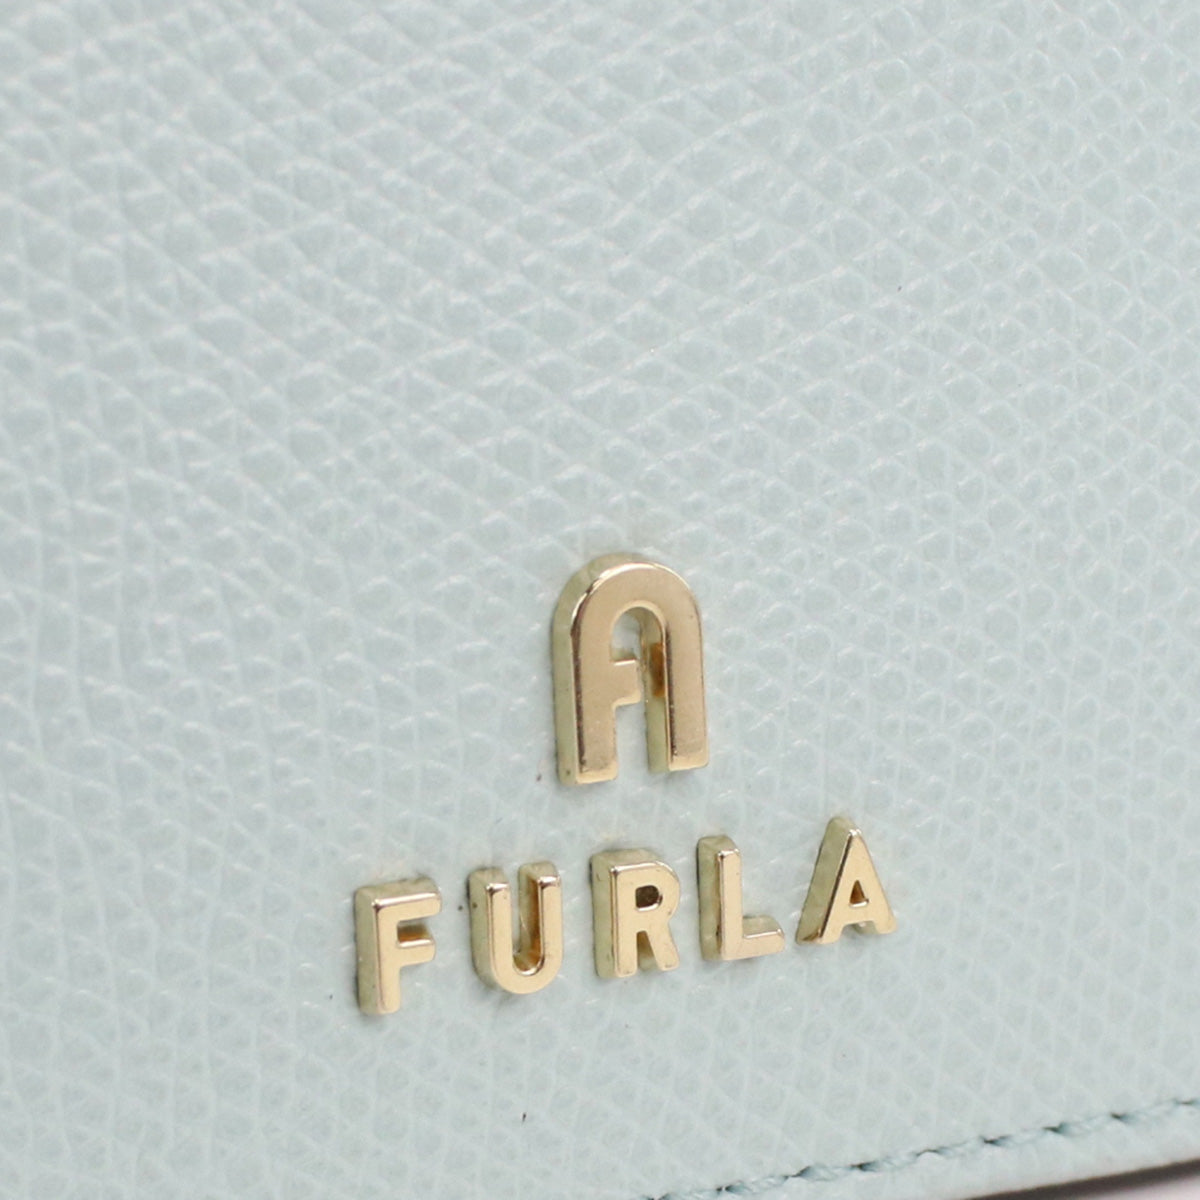 Furla フルラ FURLA CAMELIA WP00323 キーリング付小銭入れ MINTY ブルー系 レディース